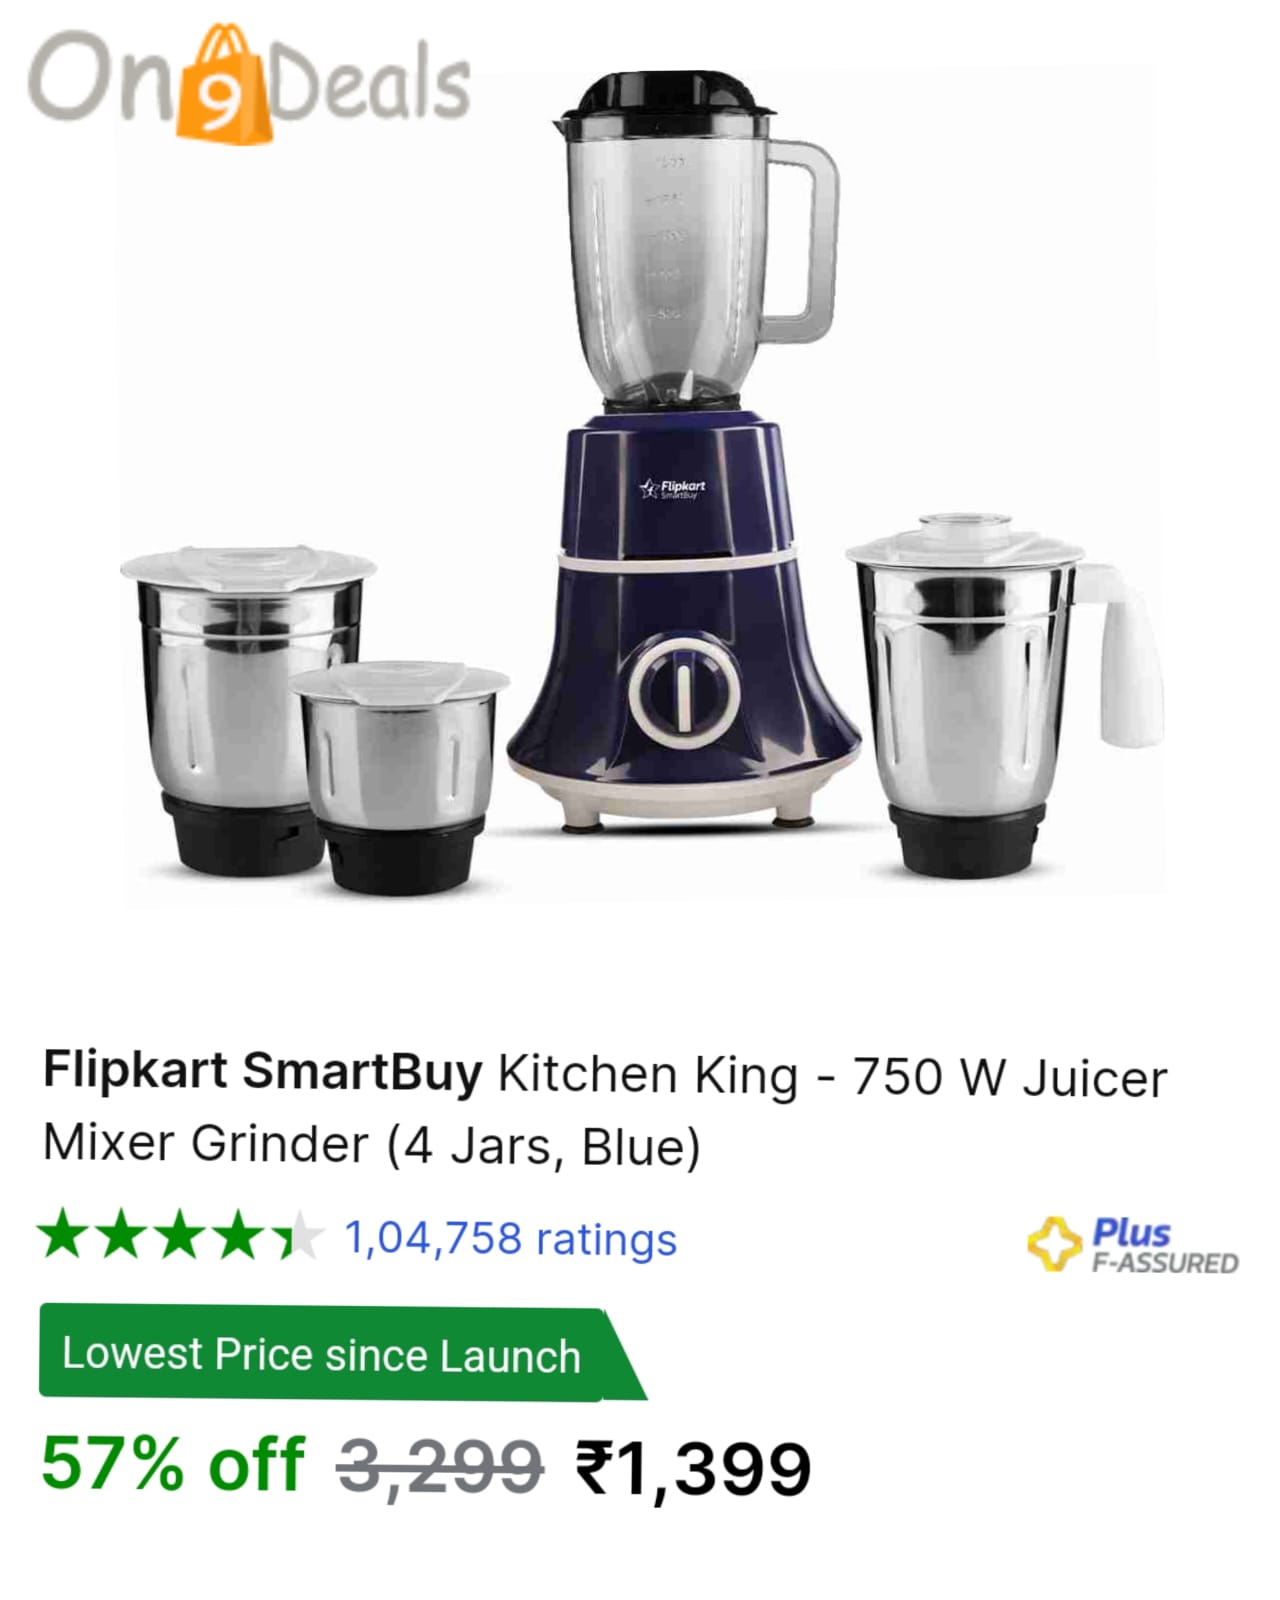 Flipkart SmartBuy Kitchen King - 750 W Juicer Mixer Grinder (4 Jars, Blue)